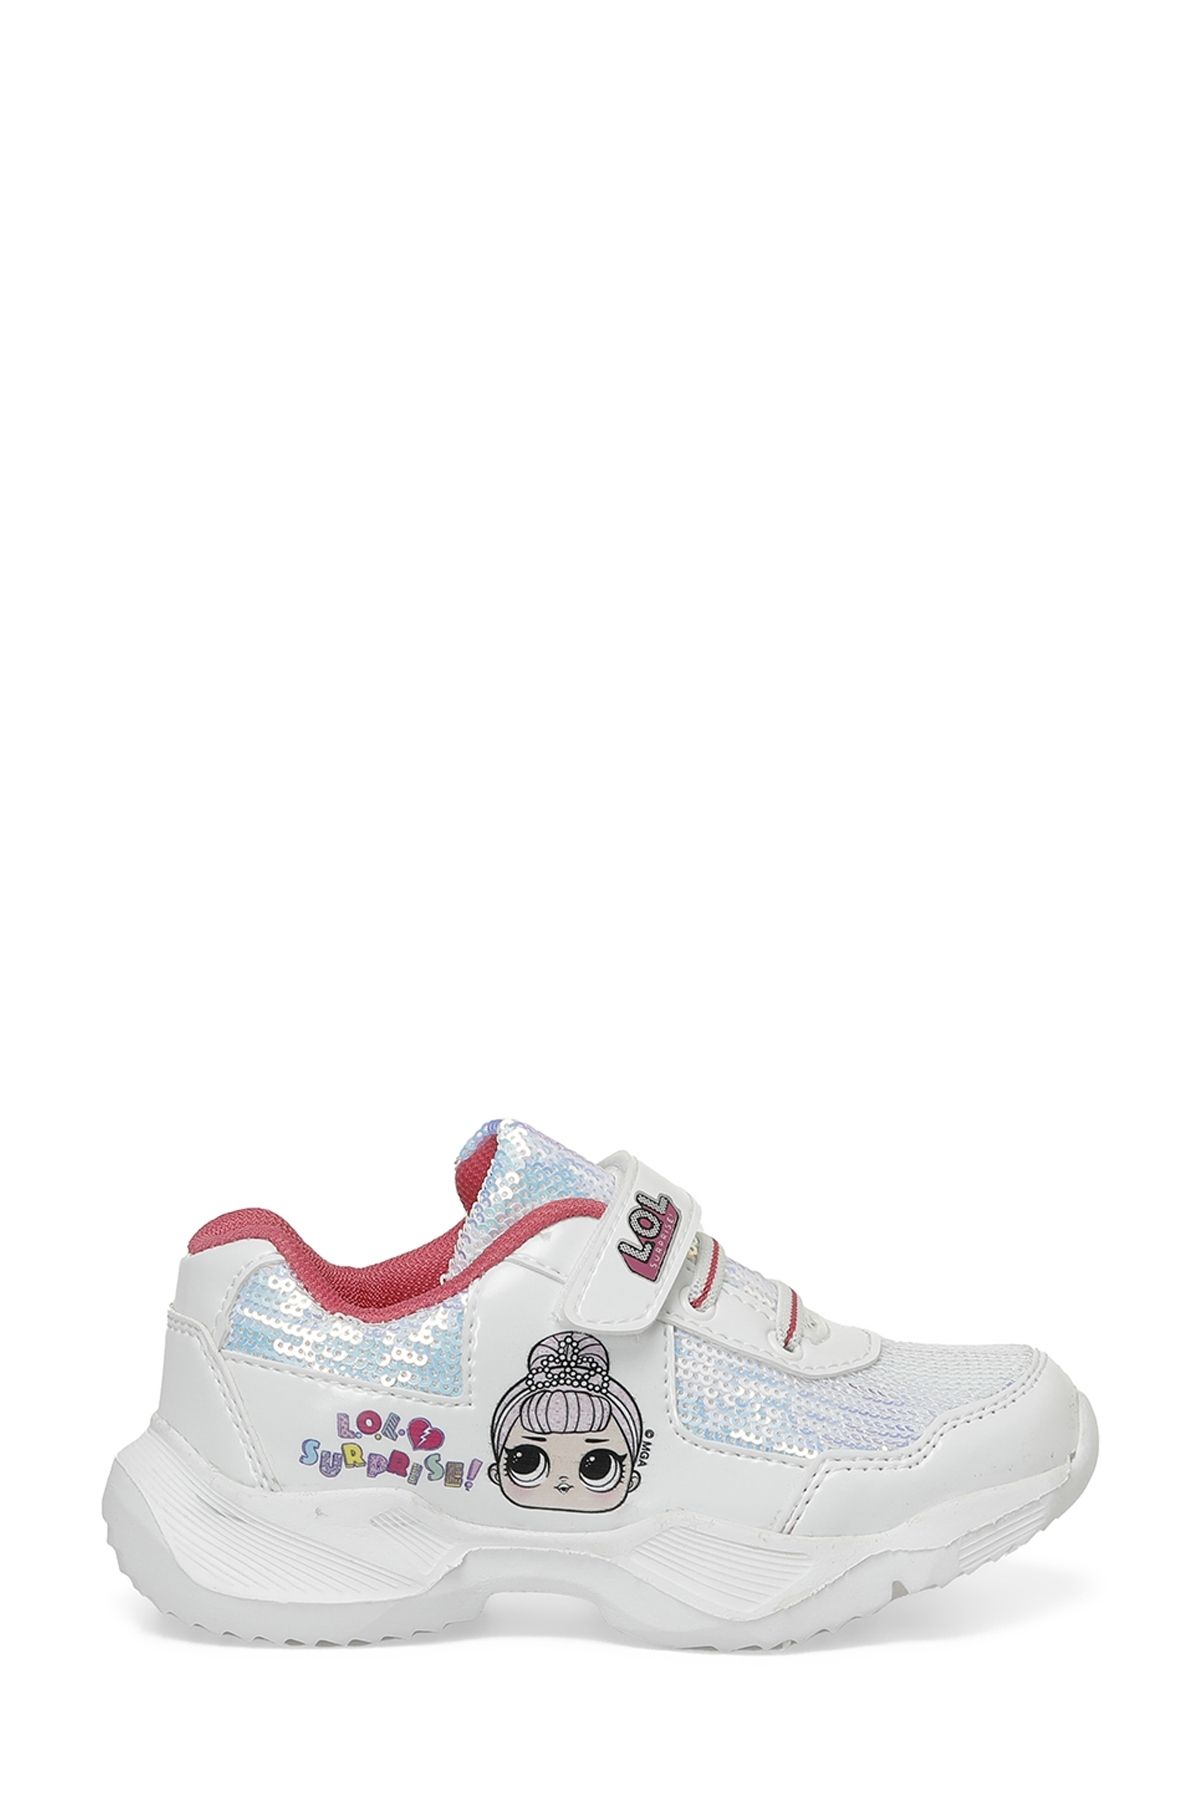 Lol I.P4FX Beyaz Kız Çocuk Sneaker